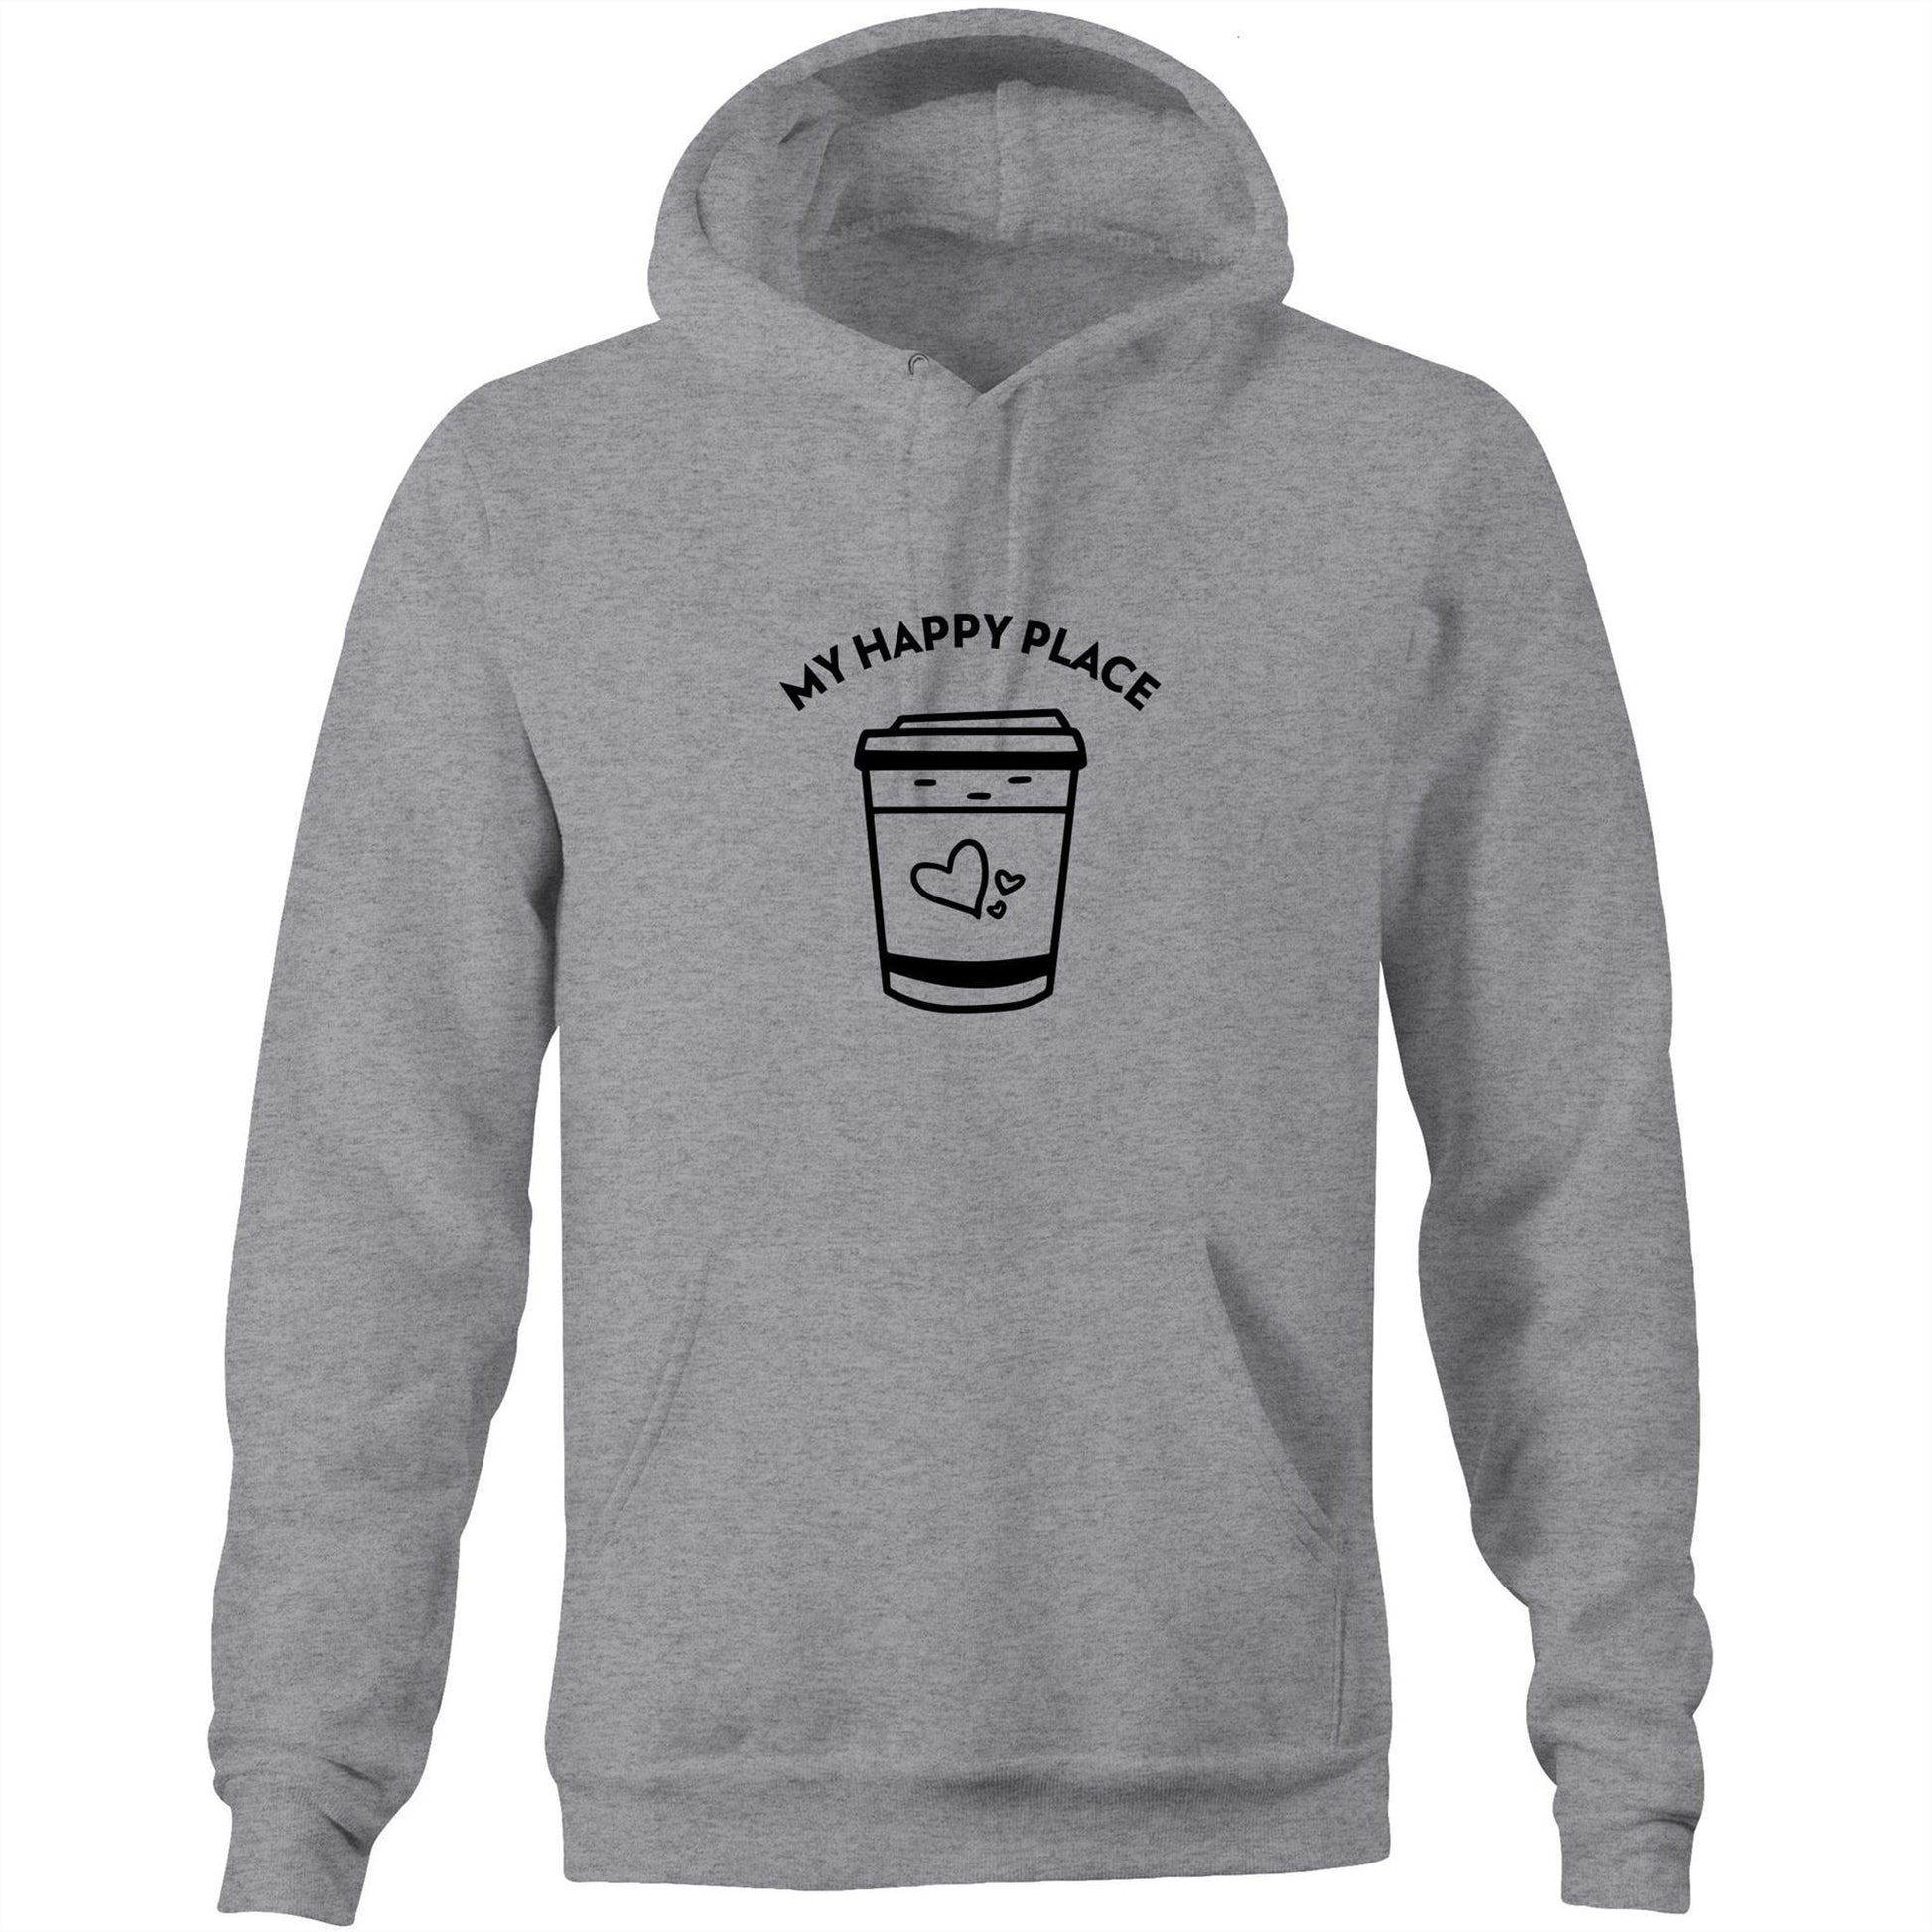 My Happy Place - Pocket Hoodie Sweatshirt Grey Marle Hoodie Coffee Mens Womens